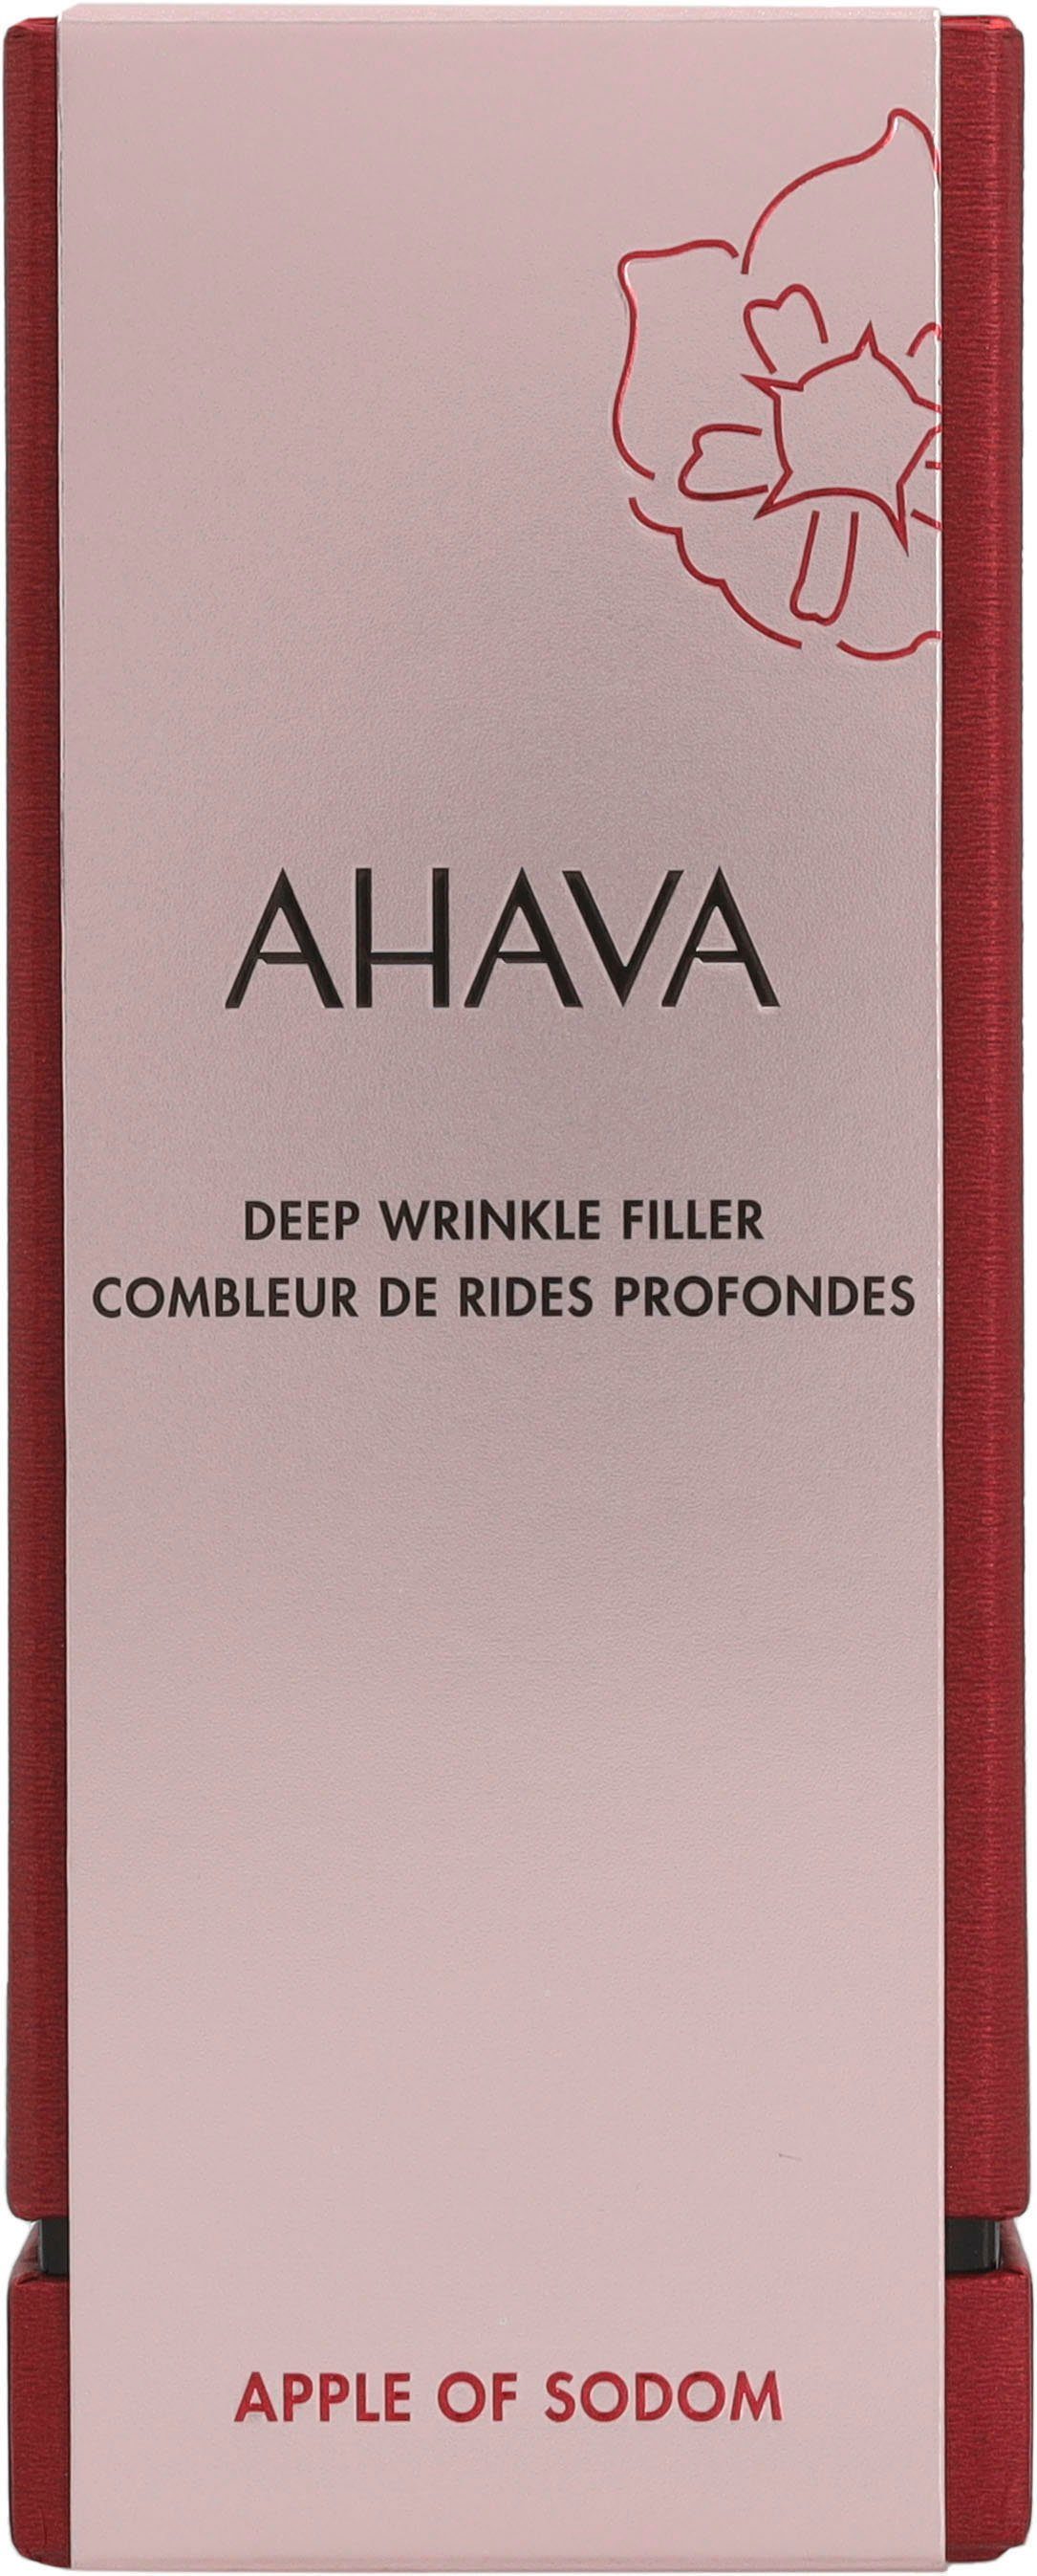 AHAVA Gesichtspflege Apple Of Wrinkle Deep Filler Sodom